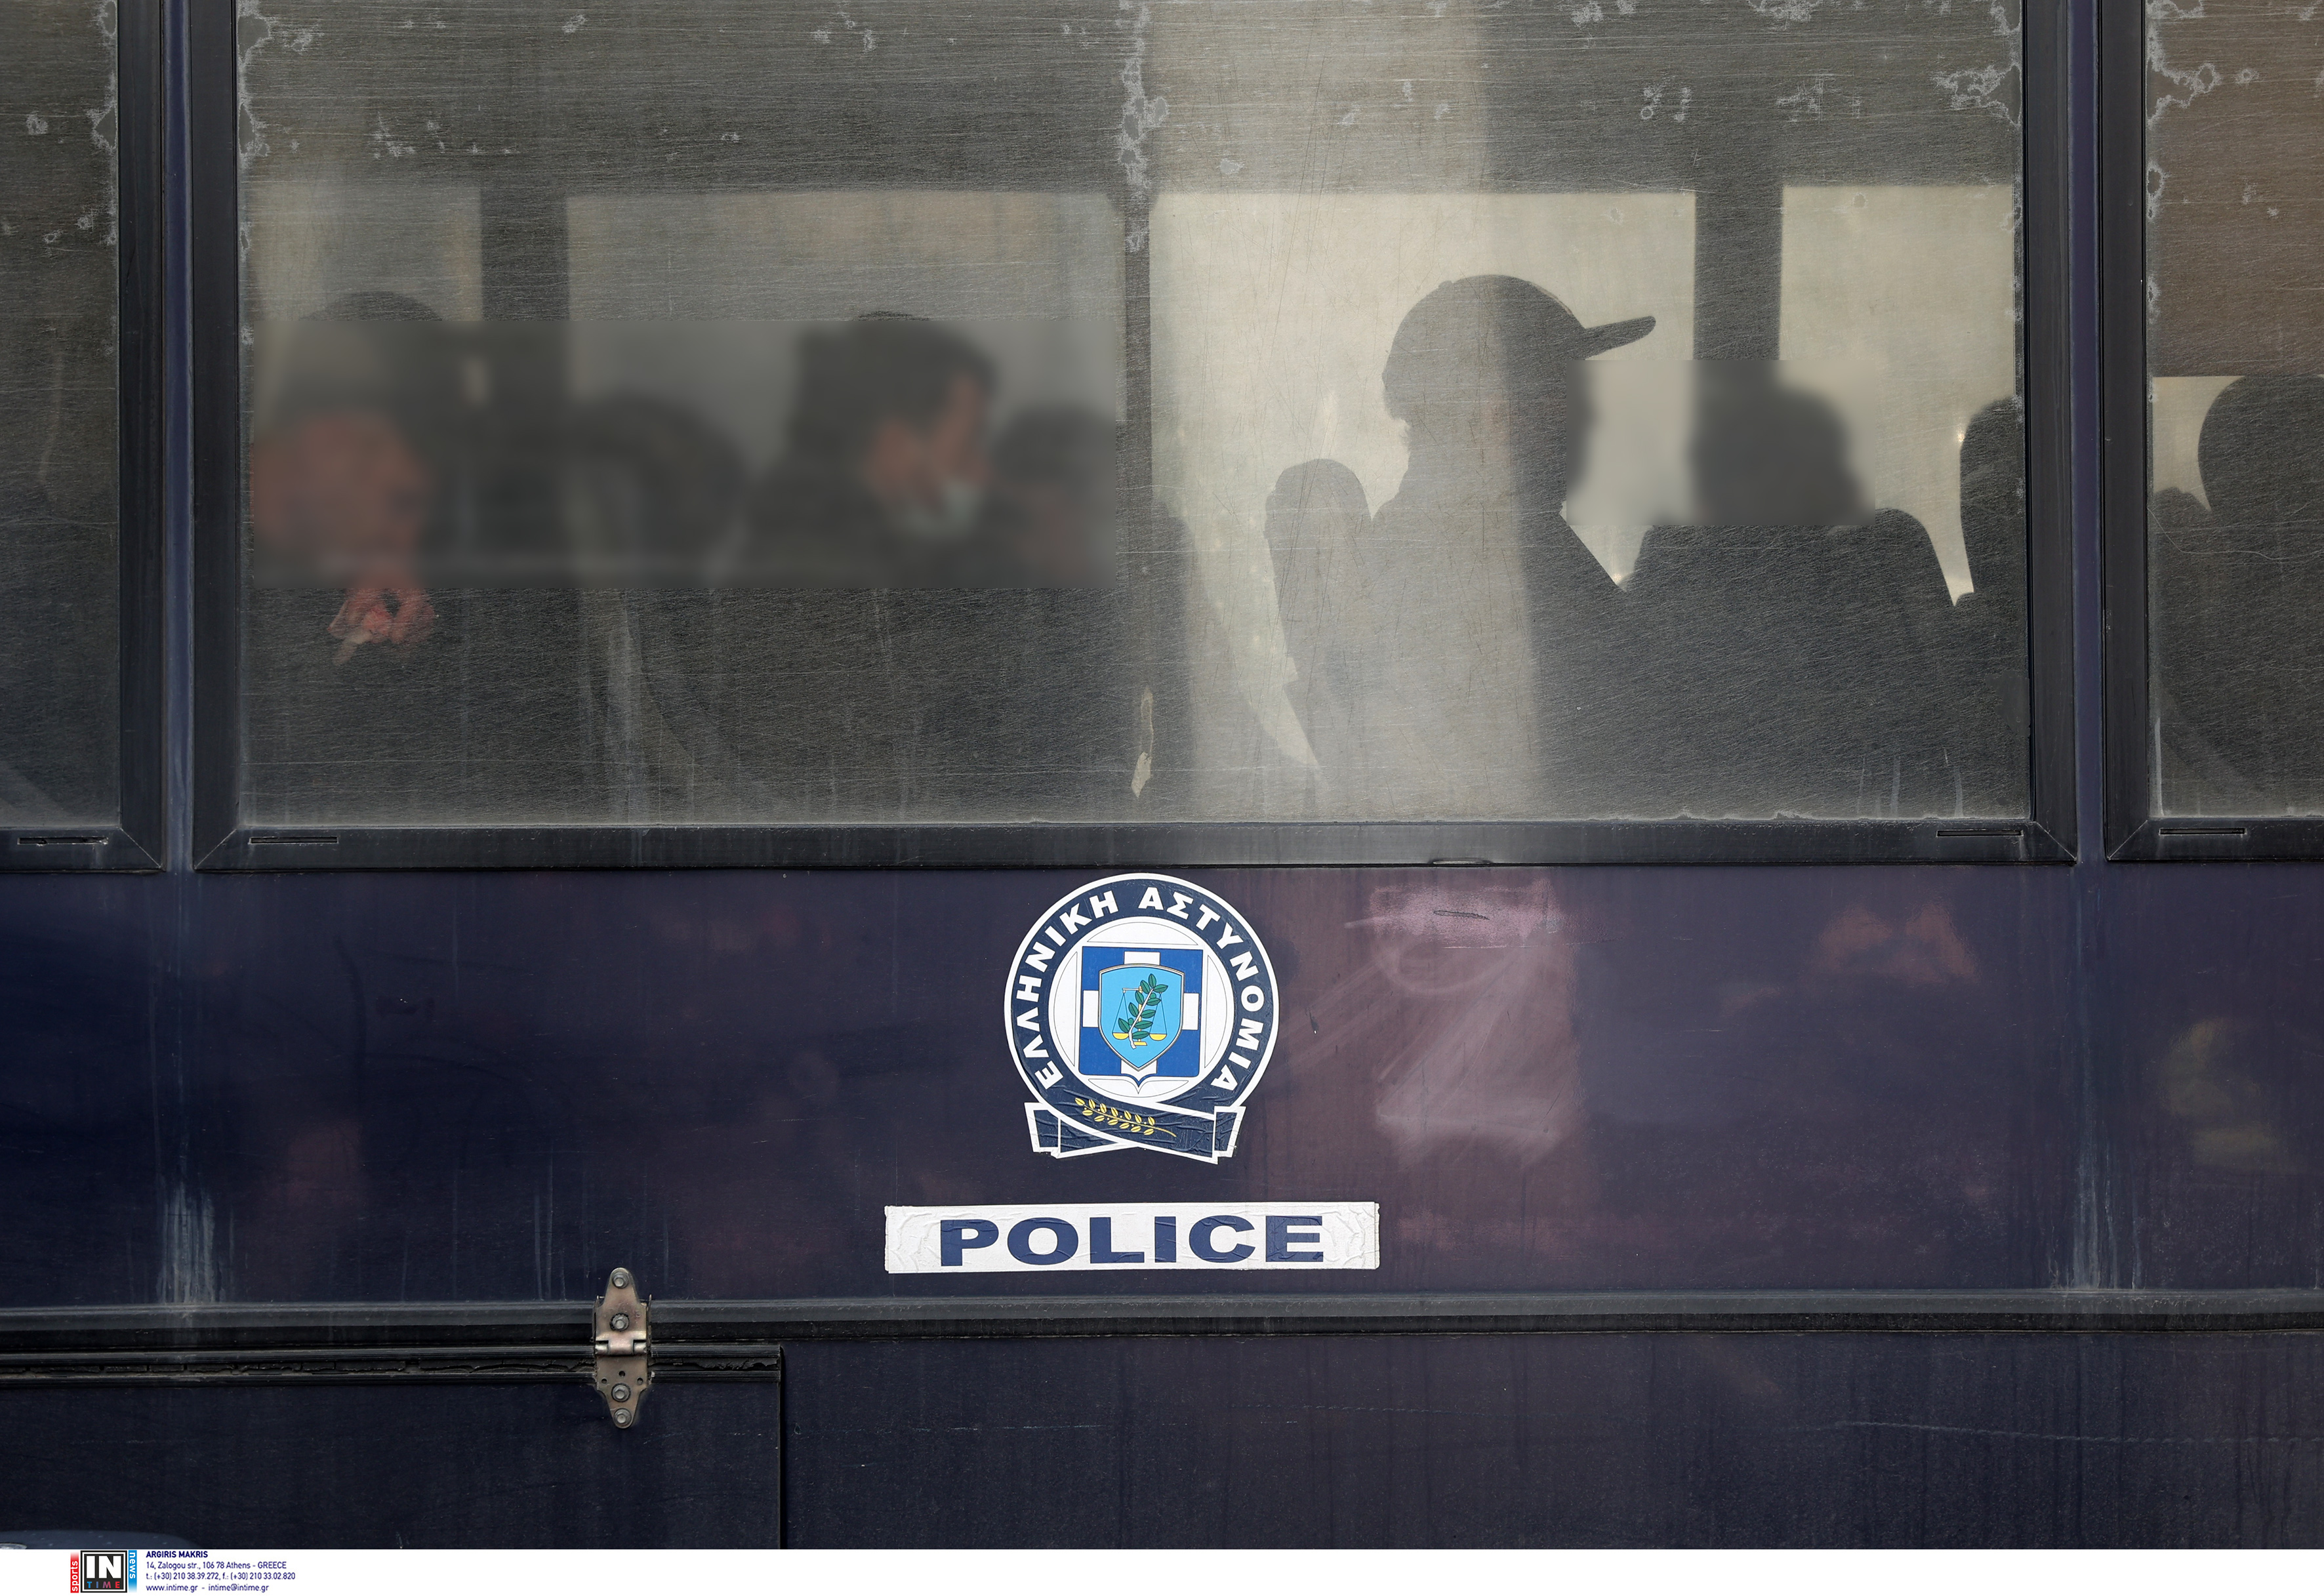 Poliția greacă desfășoară o operațiune de securitate masivă în centrul Atenei, arestând 132 de persoane